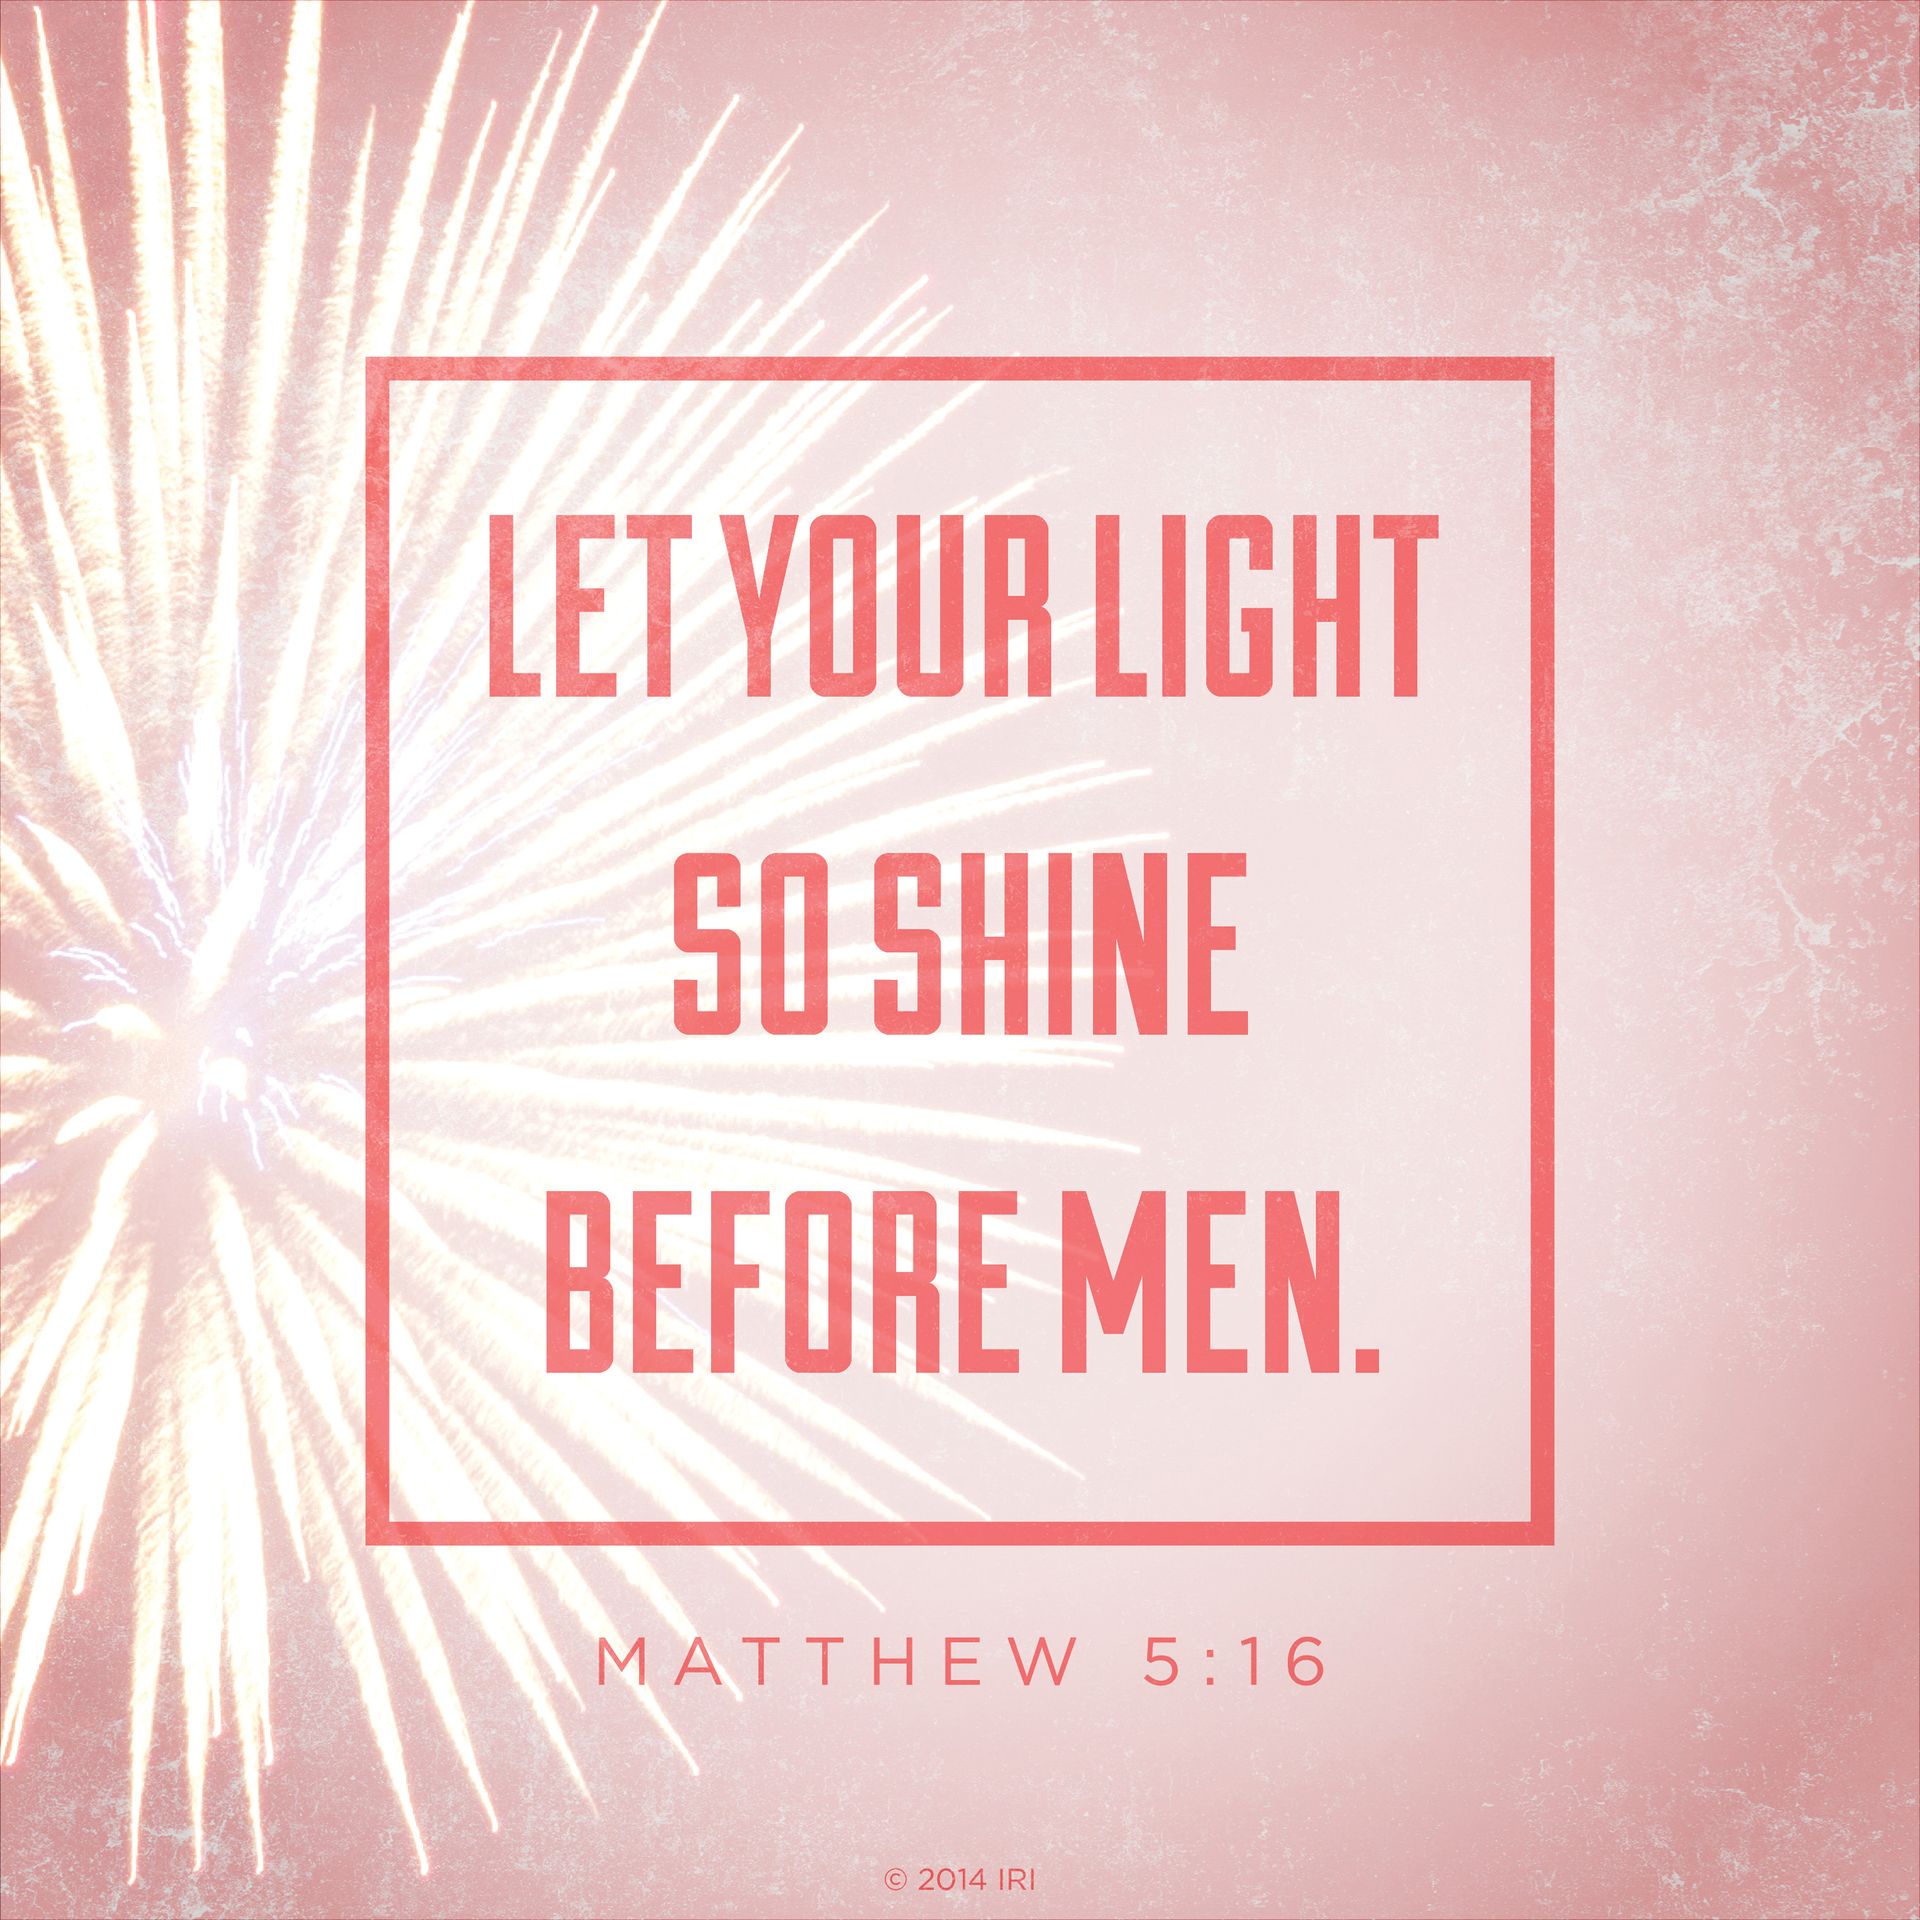 “Let your light so shine before men.”—Matthew 5:16